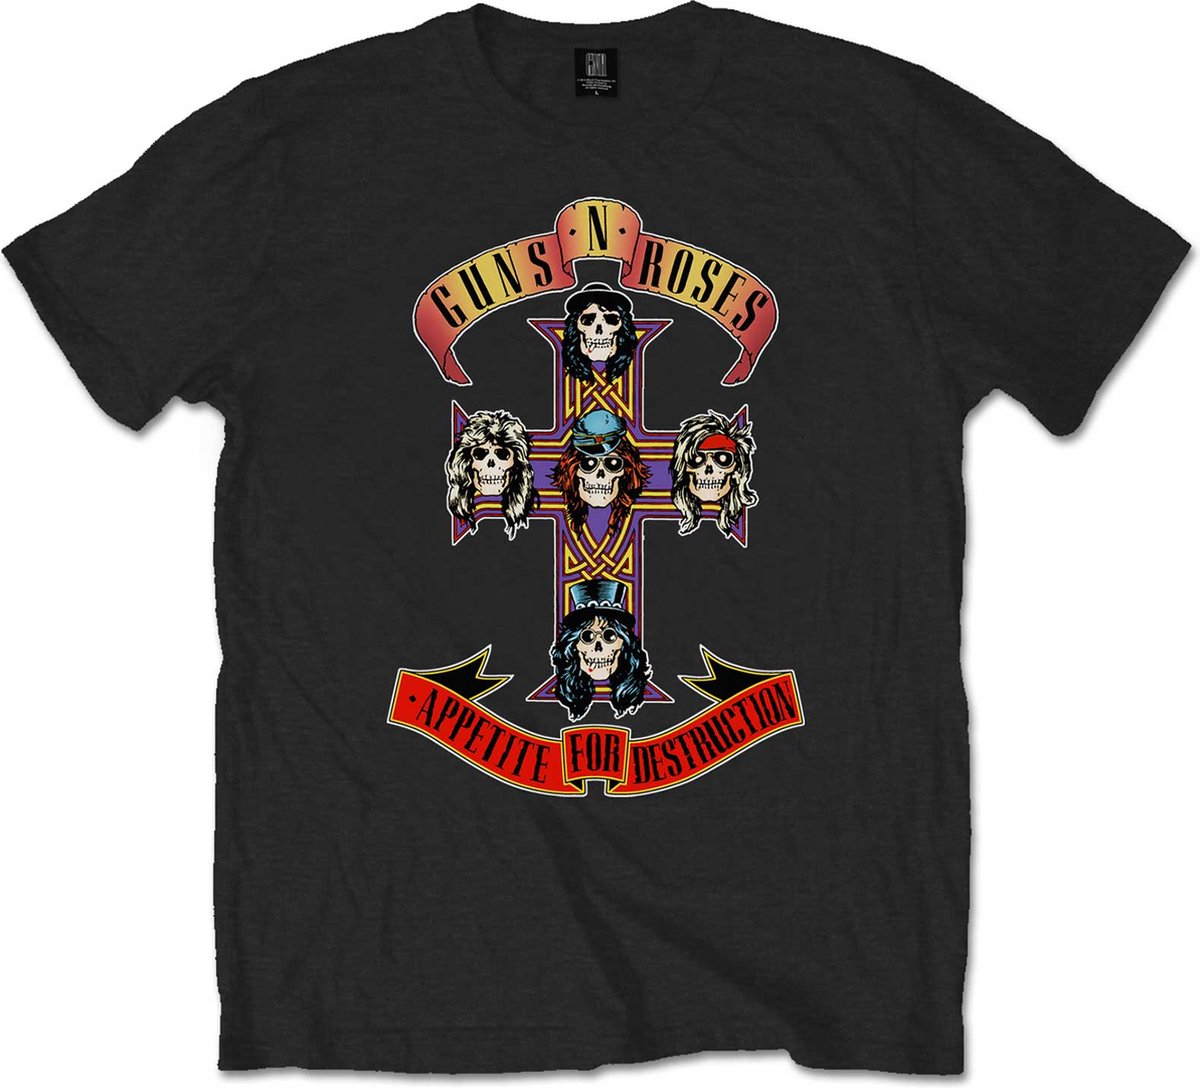 Guns N' Roses Shirt - Appetite for Destruction Logo 5XL